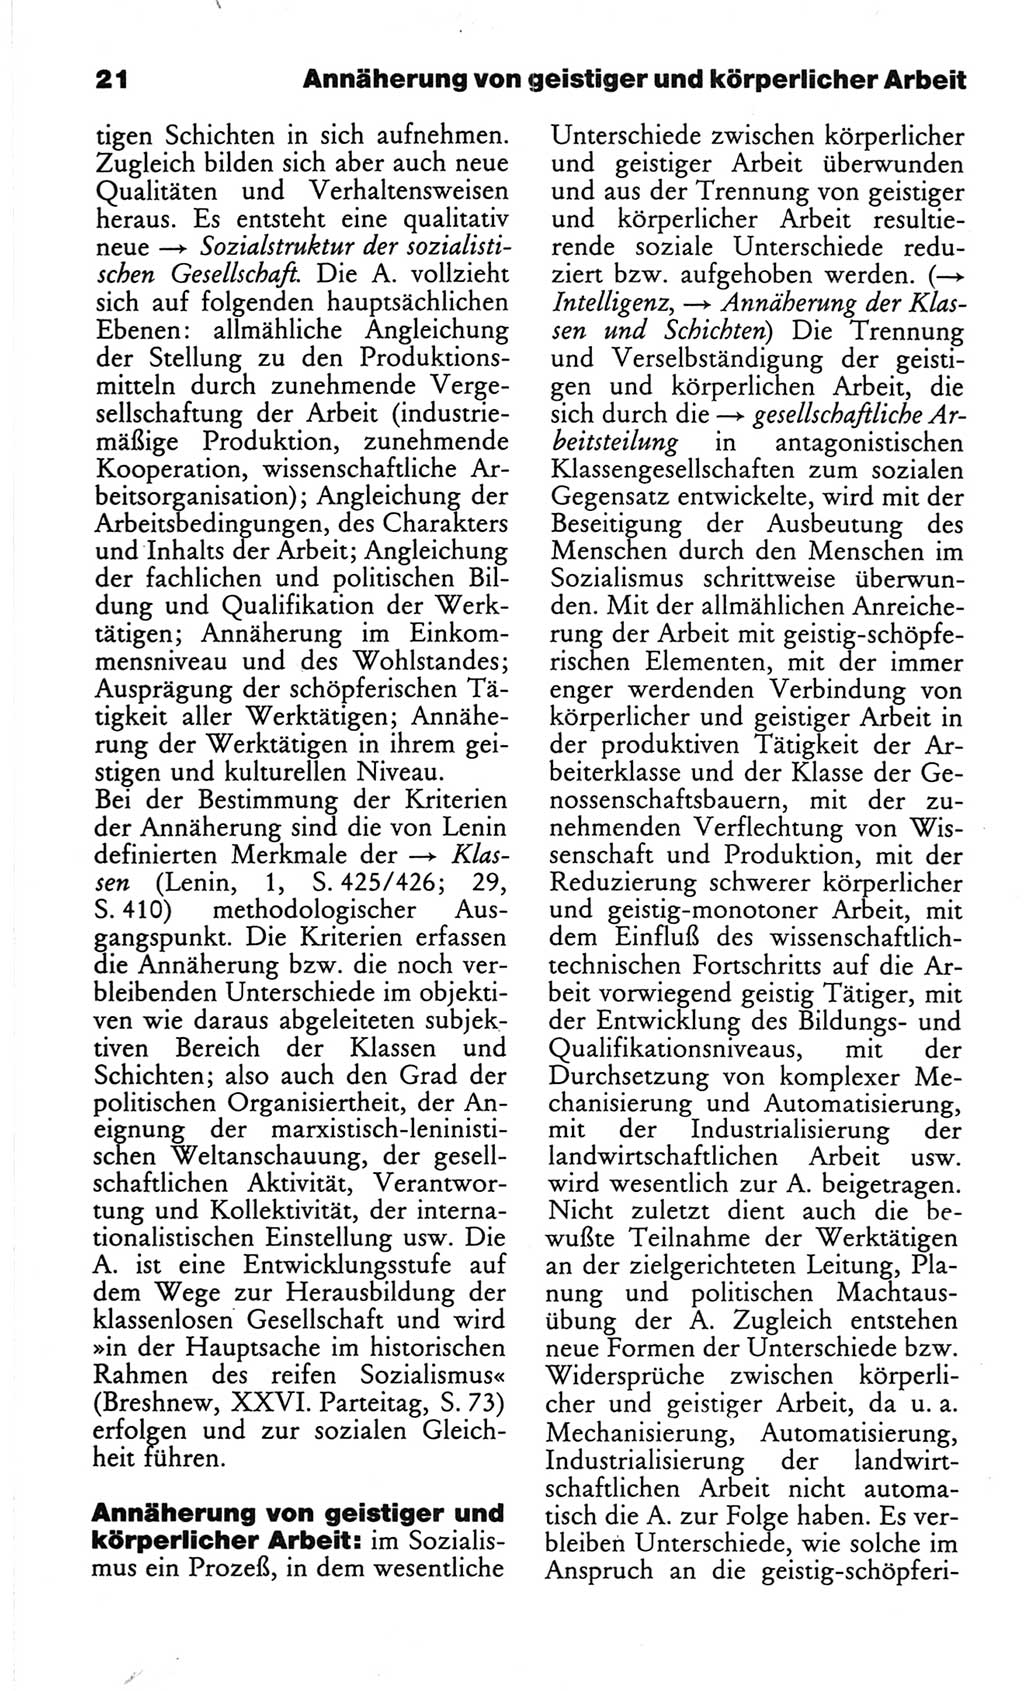 Wörterbuch des wissenschaftlichen Kommunismus [Deutsche Demokratische Republik (DDR)] 1982, Seite 21 (Wb. wiss. Komm. DDR 1982, S. 21)